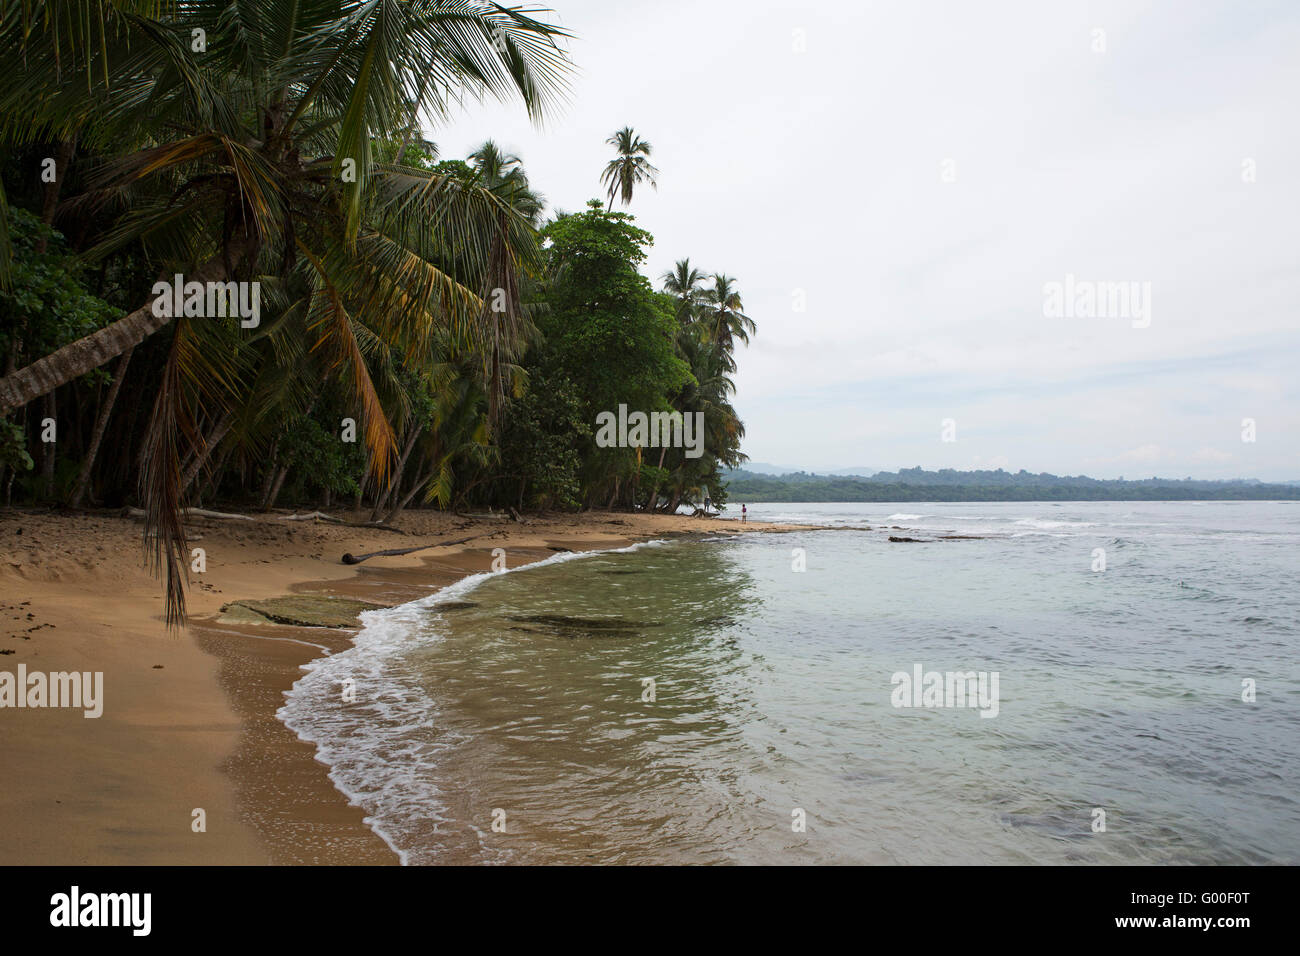 La mer des Caraïbes Tours Manzanillo plage de Costa Rica. La plage se trouve à proximité de Puerto Viejo de Limon Province du pays. Banque D'Images